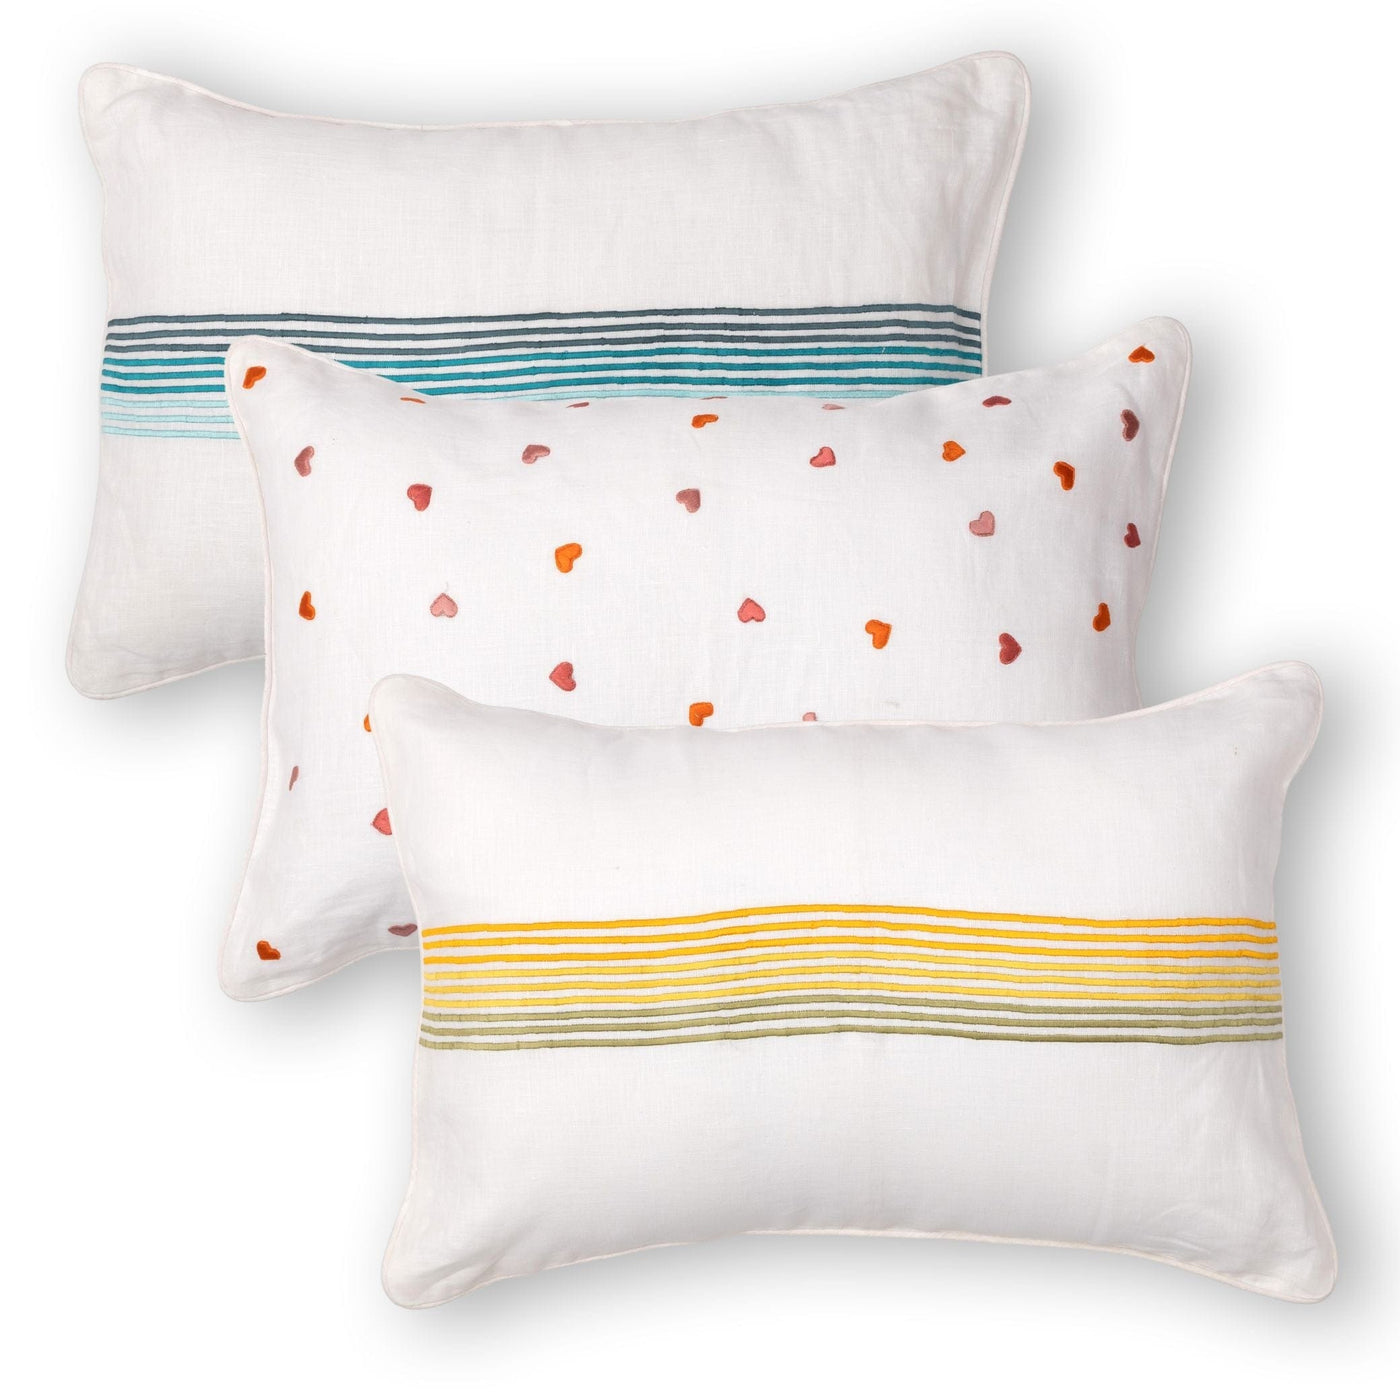 The Fabricrush  Pillowcases & Shams Rainbow Embroidery Flower Cushion Cover